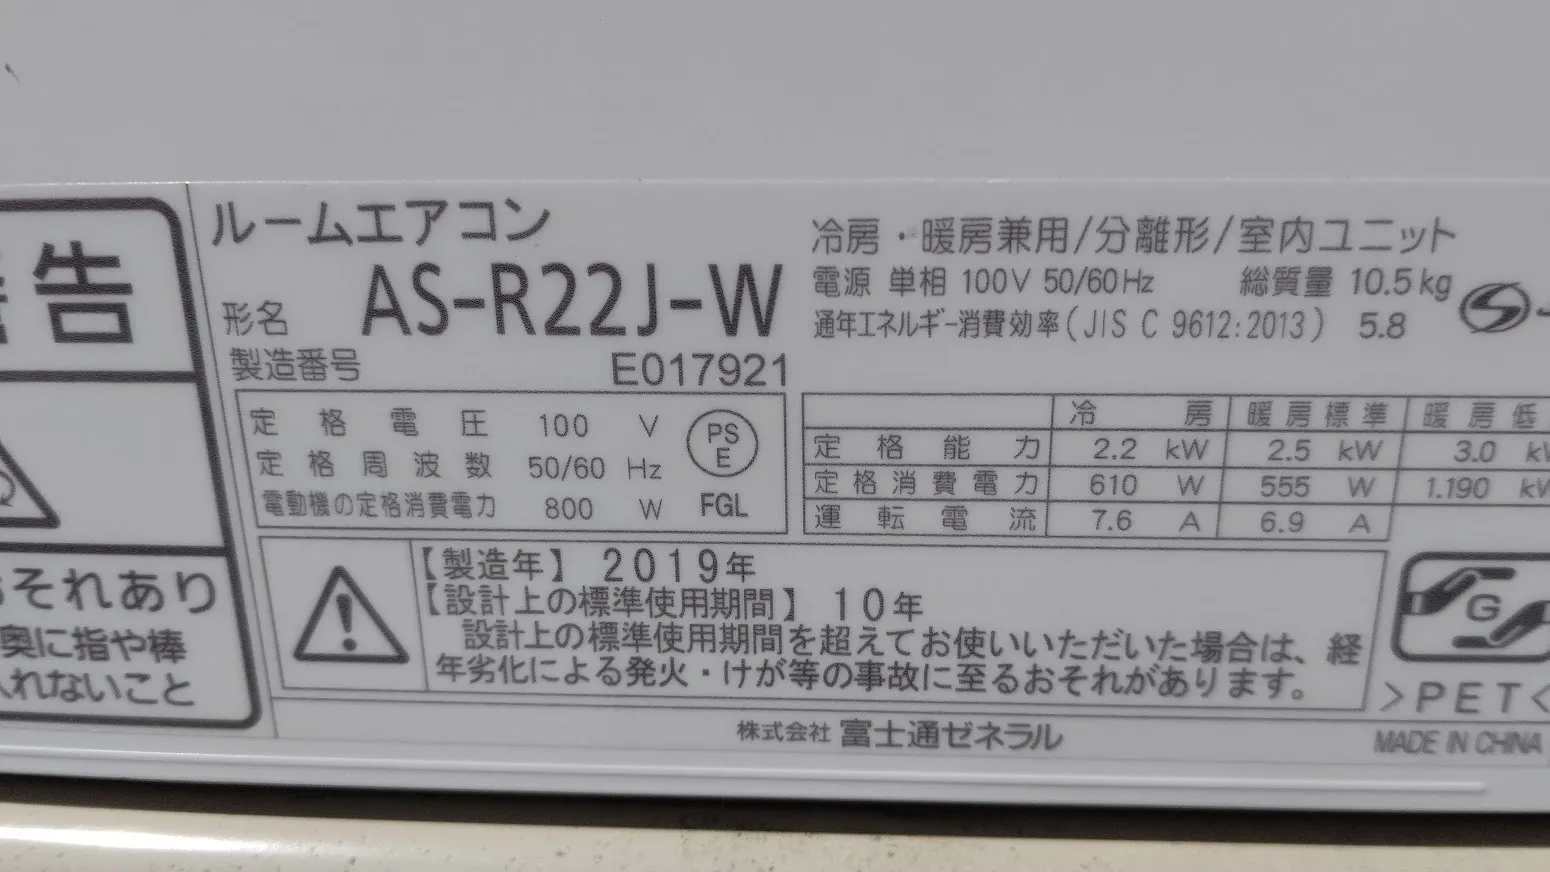 中古エアコン販売中です！｜富士通AS-R22J-W自動お掃除機能付きです